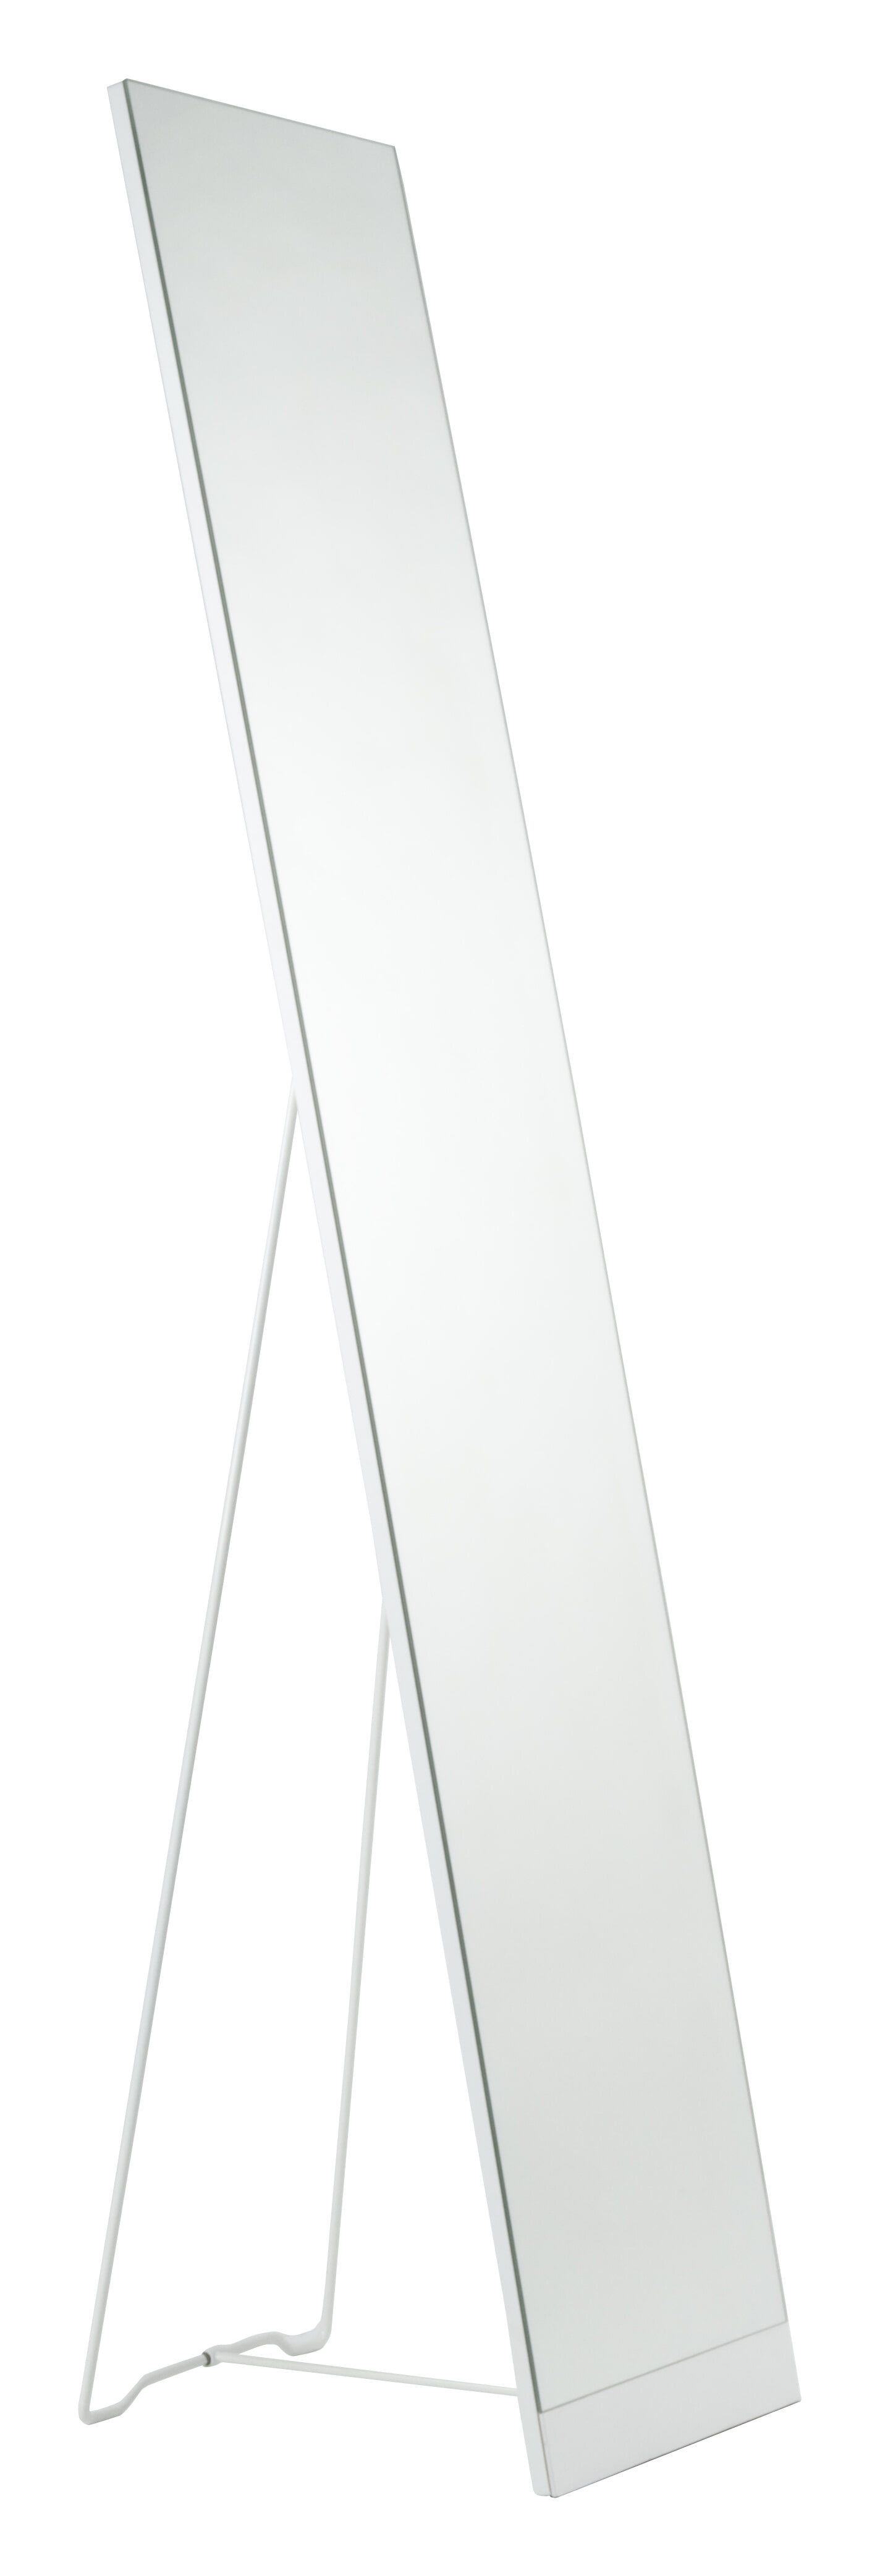 ZILT Staande Spiegel 'Xander' 147.5 x 30.5cm, kleur Wit